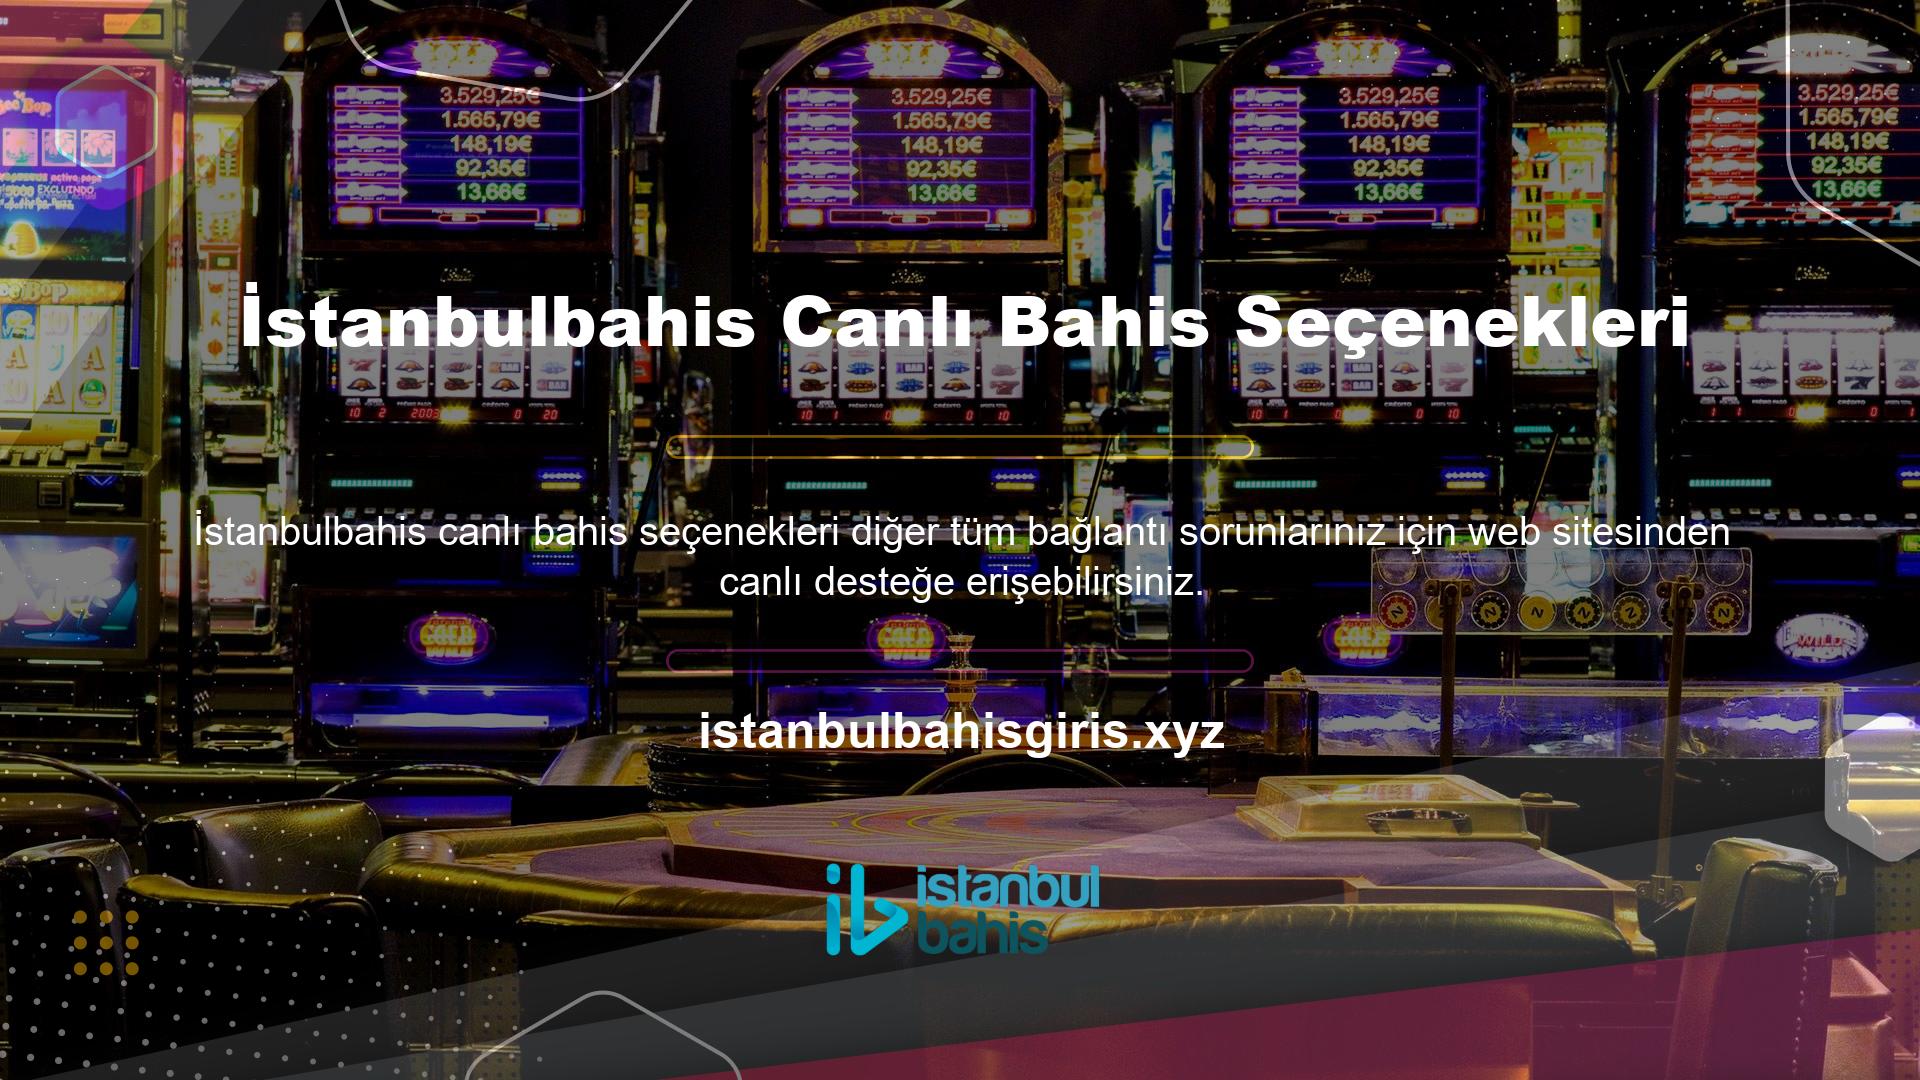 İstanbulbahis Live'ın bahis alternatifleri şu şekildedir, İstanbulbahis Canlı Bahis Seçenekleri bahis sitesi üyeleri bu imkana erişebilirler